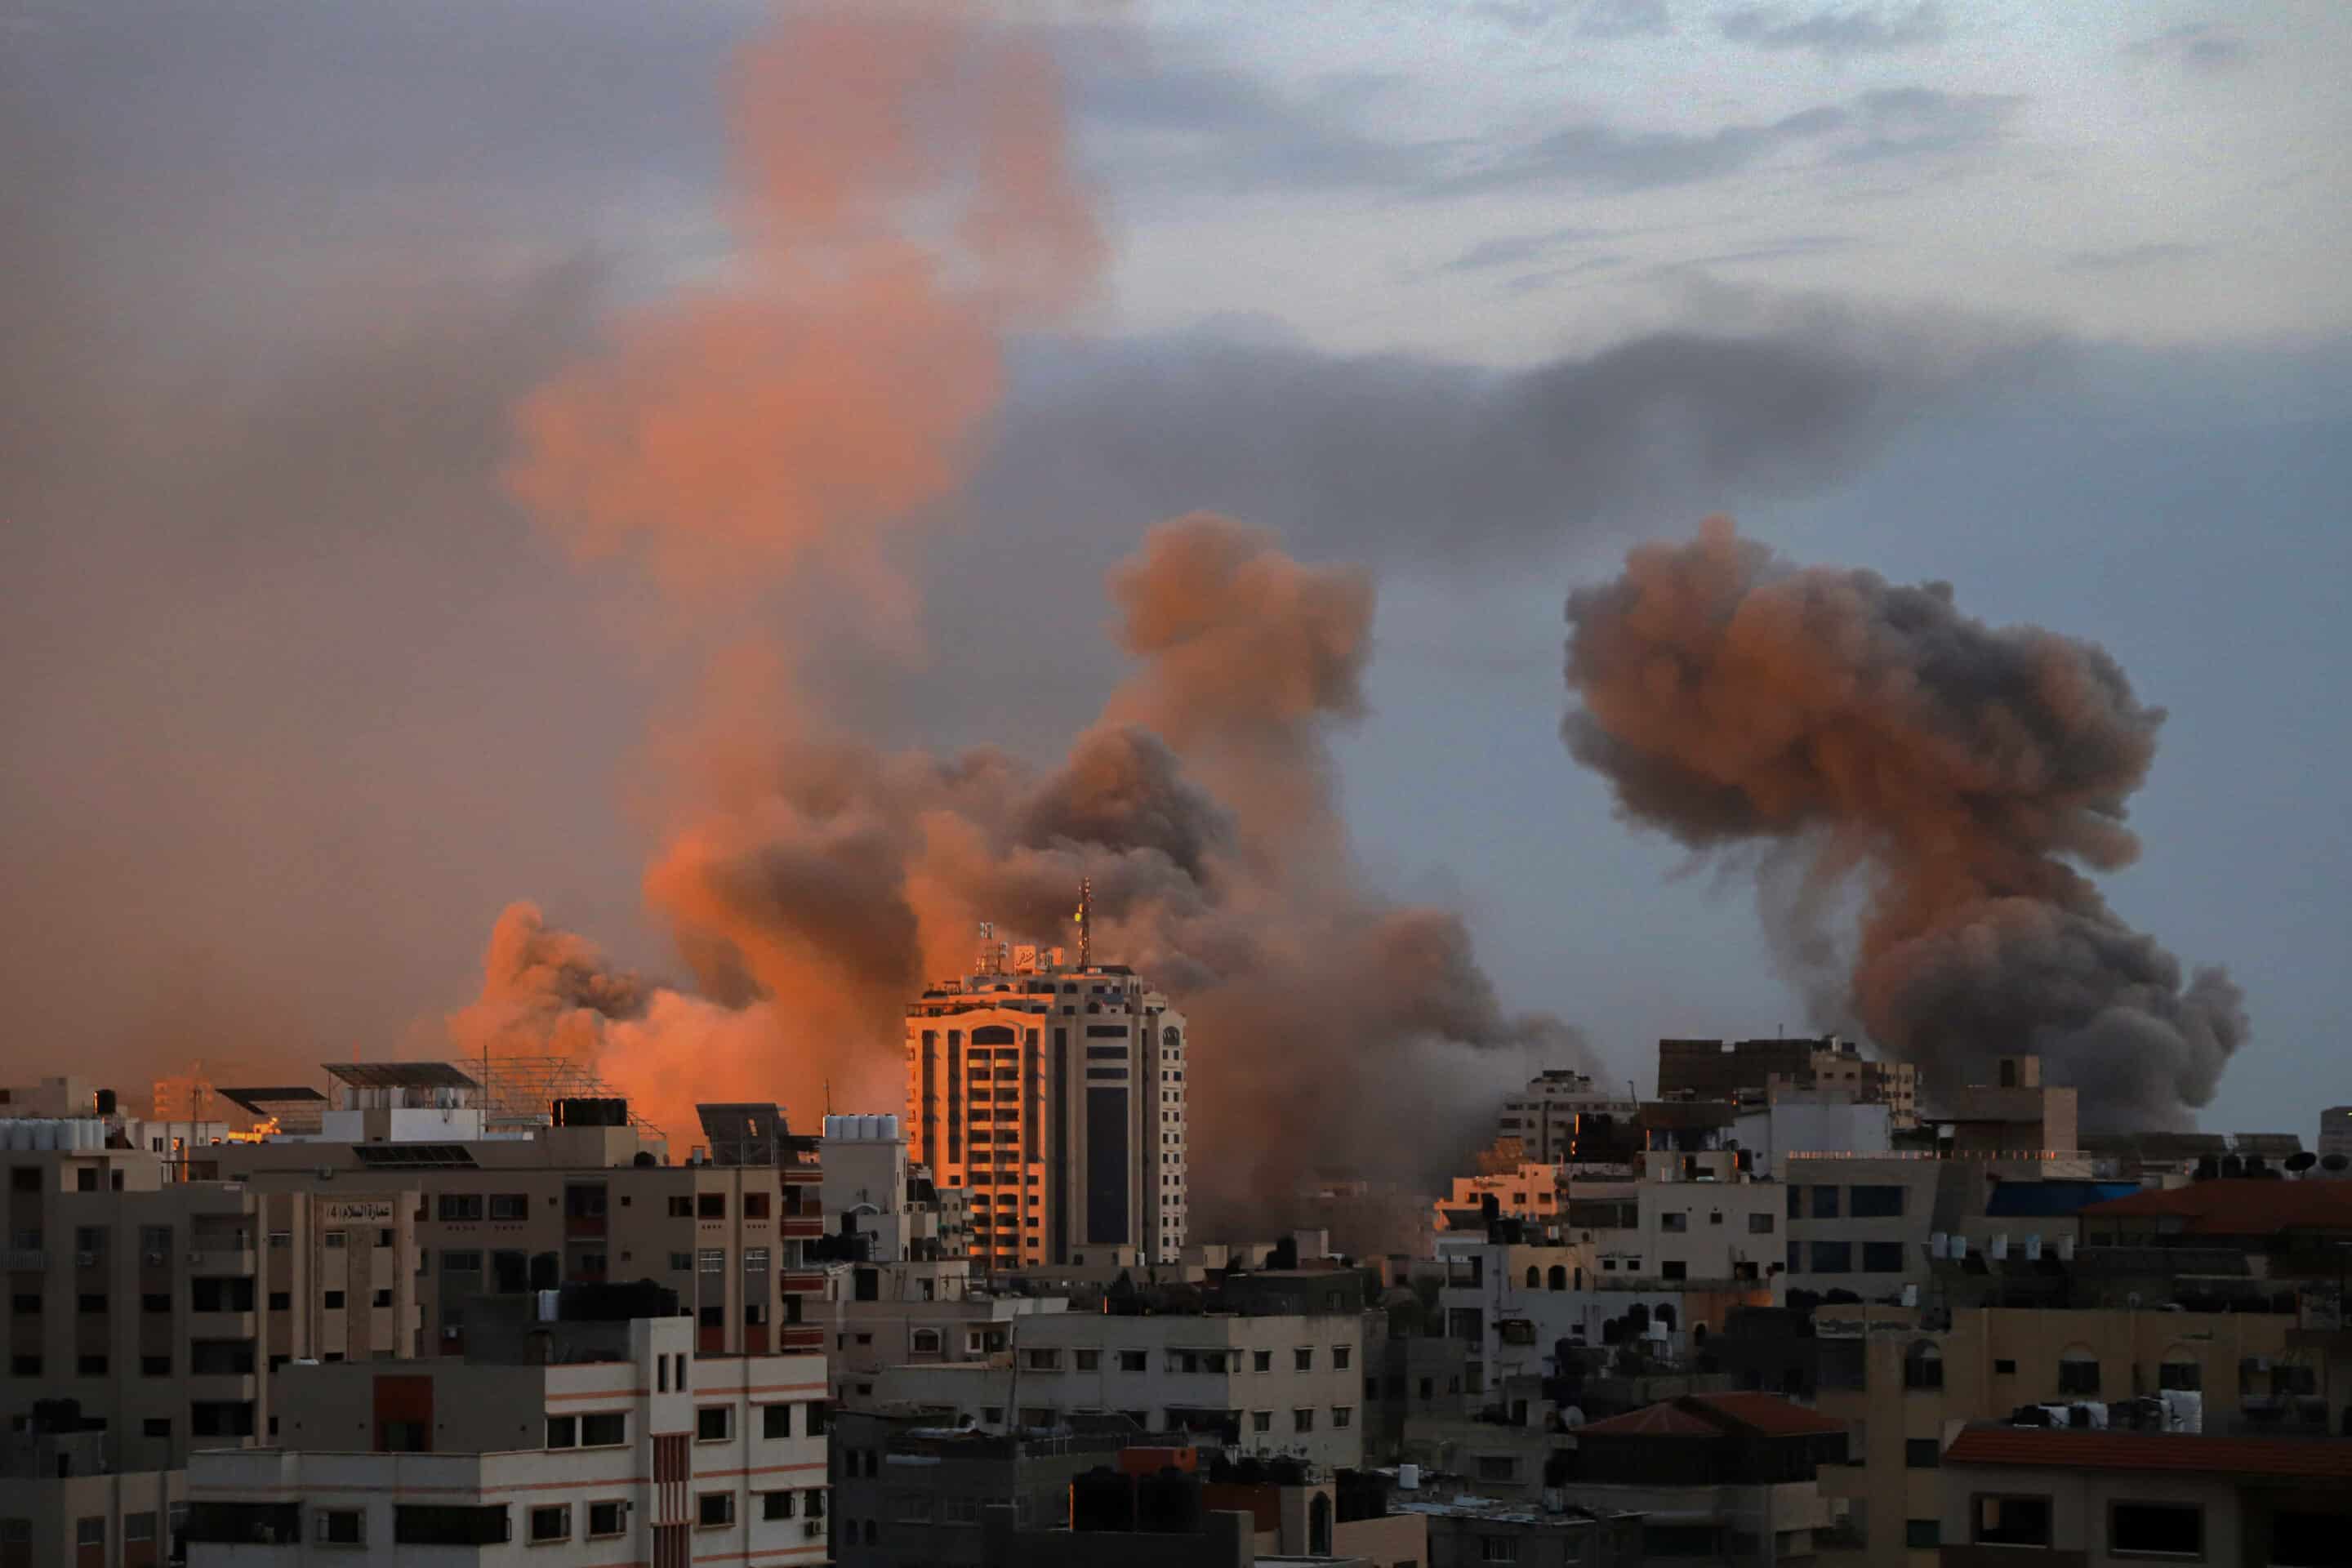 Podcast – Israël – Hamas : quelles solutions pour la paix ?